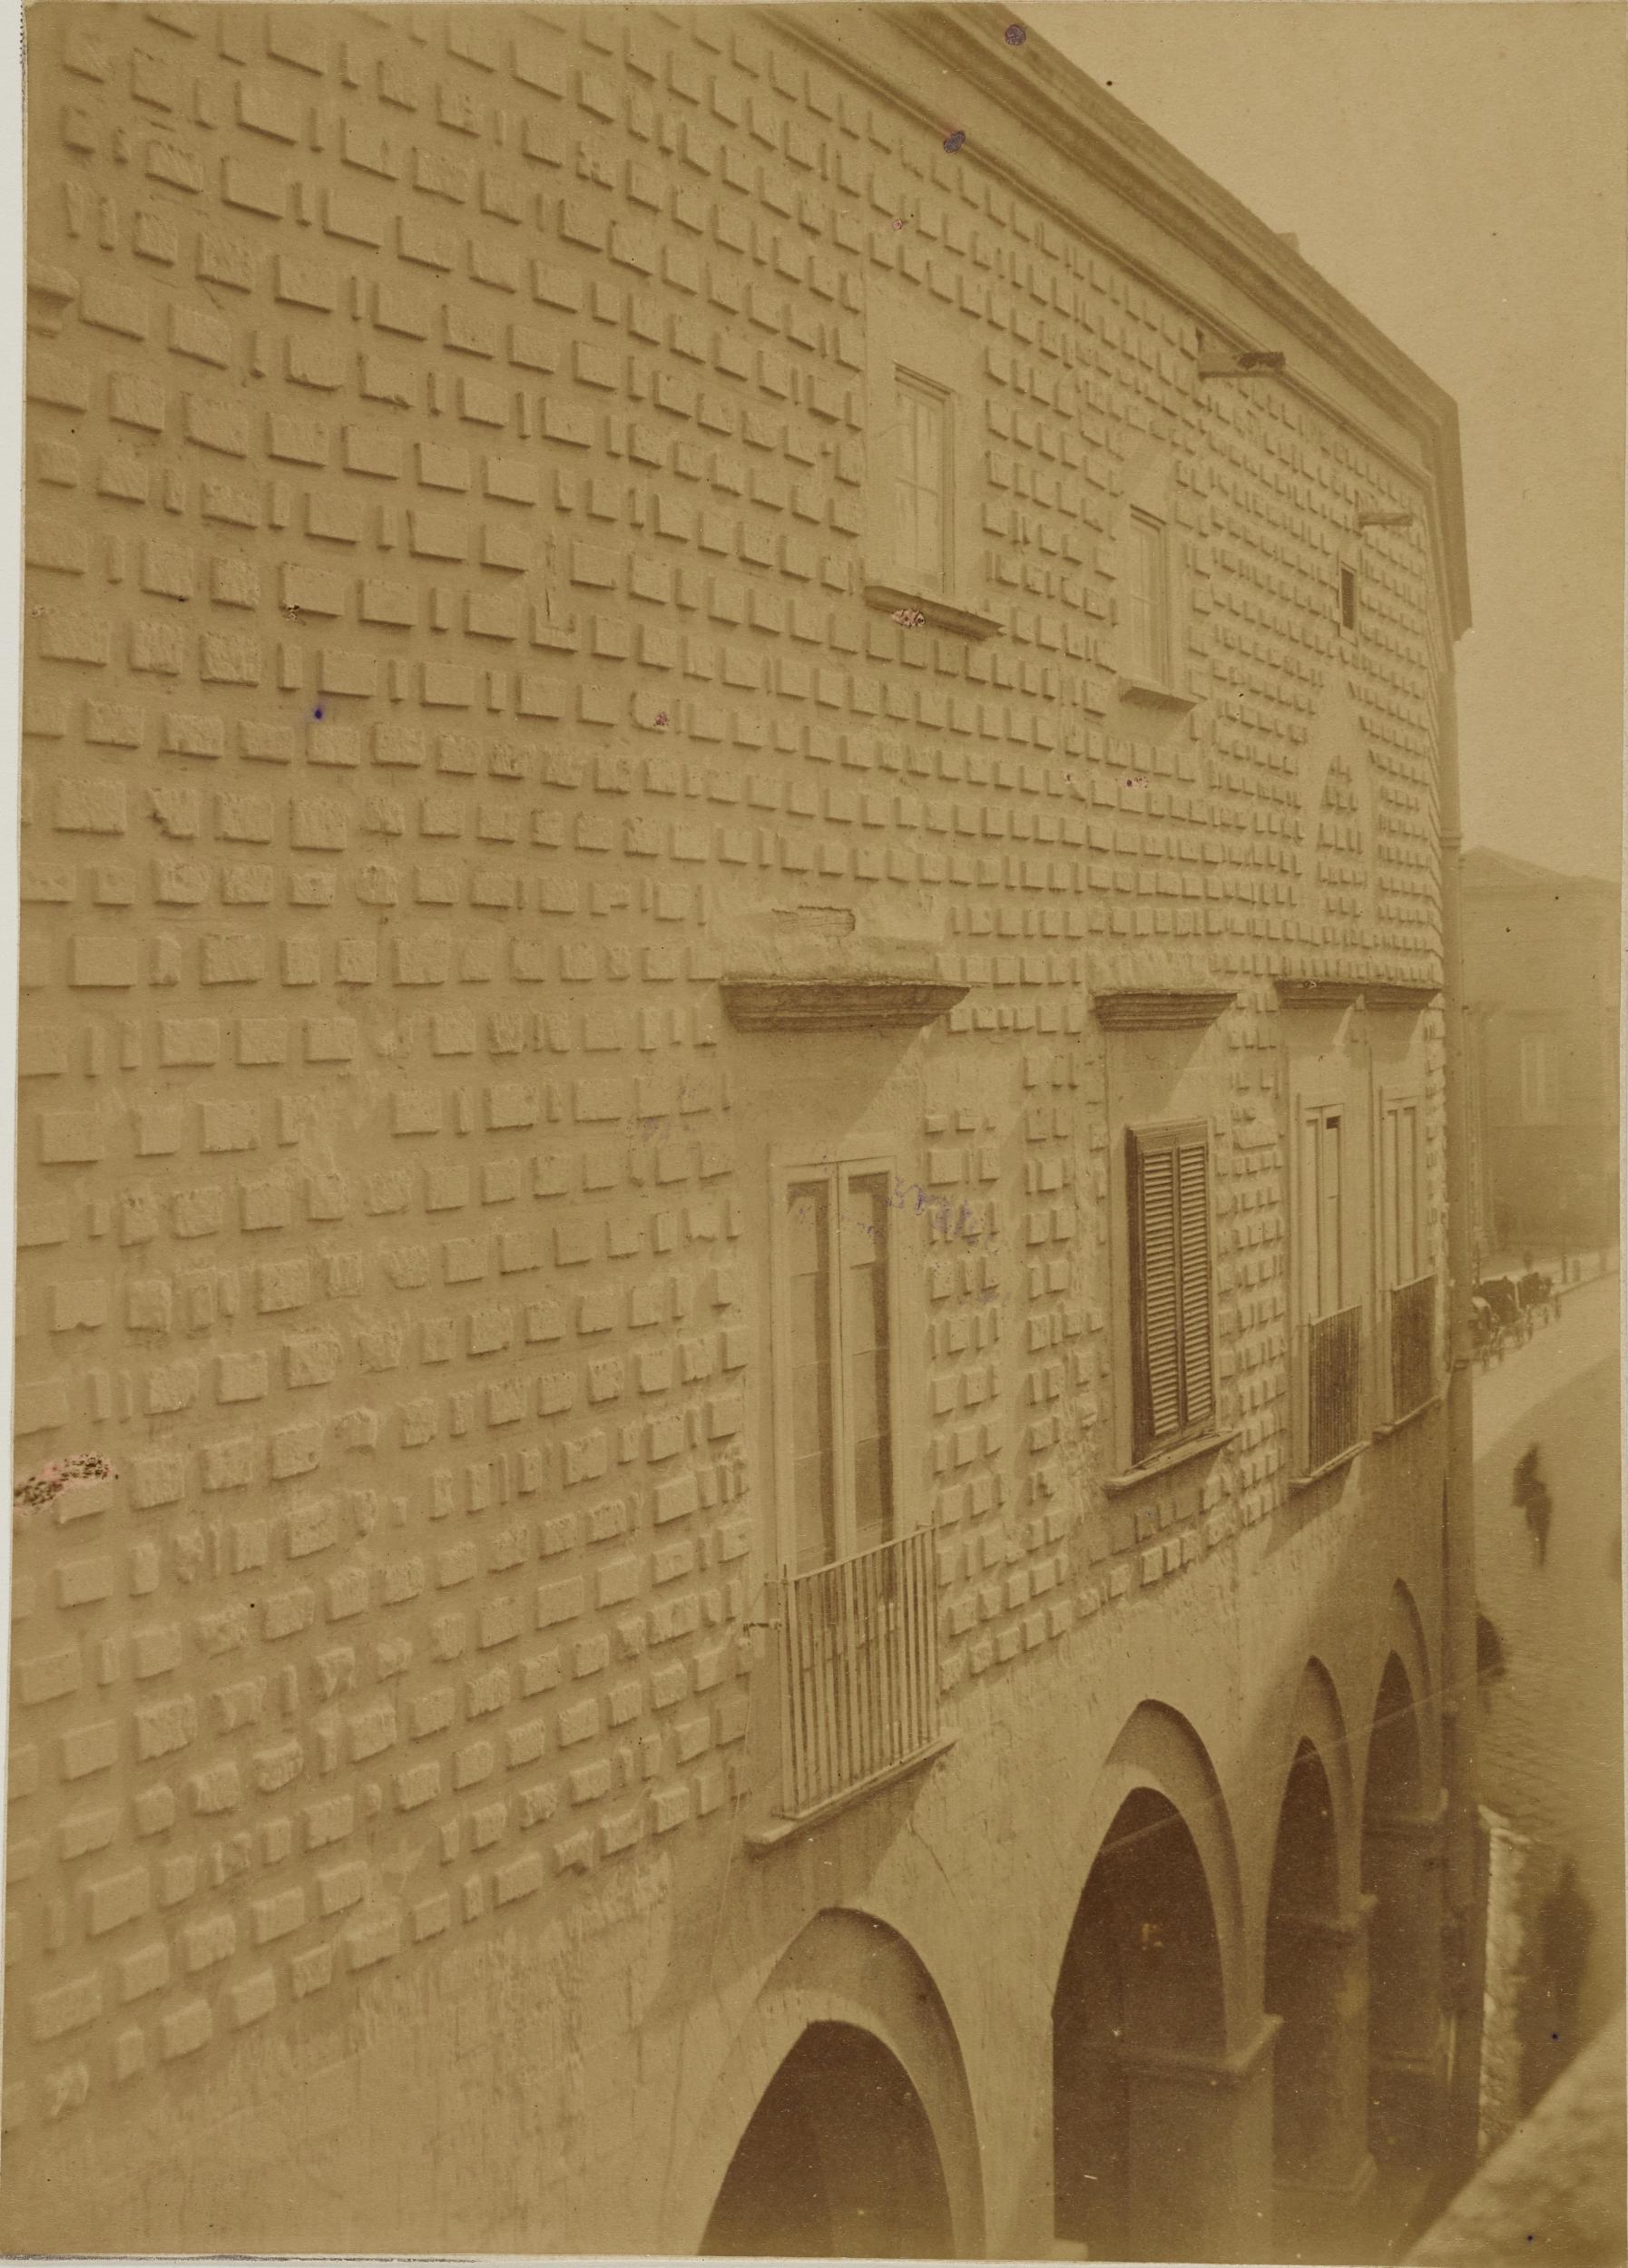 Fotografo non identificato, Barletta - Palazzo bonelli, scorcio dei piani superiori, 1851-1875, carbone, MPI152543